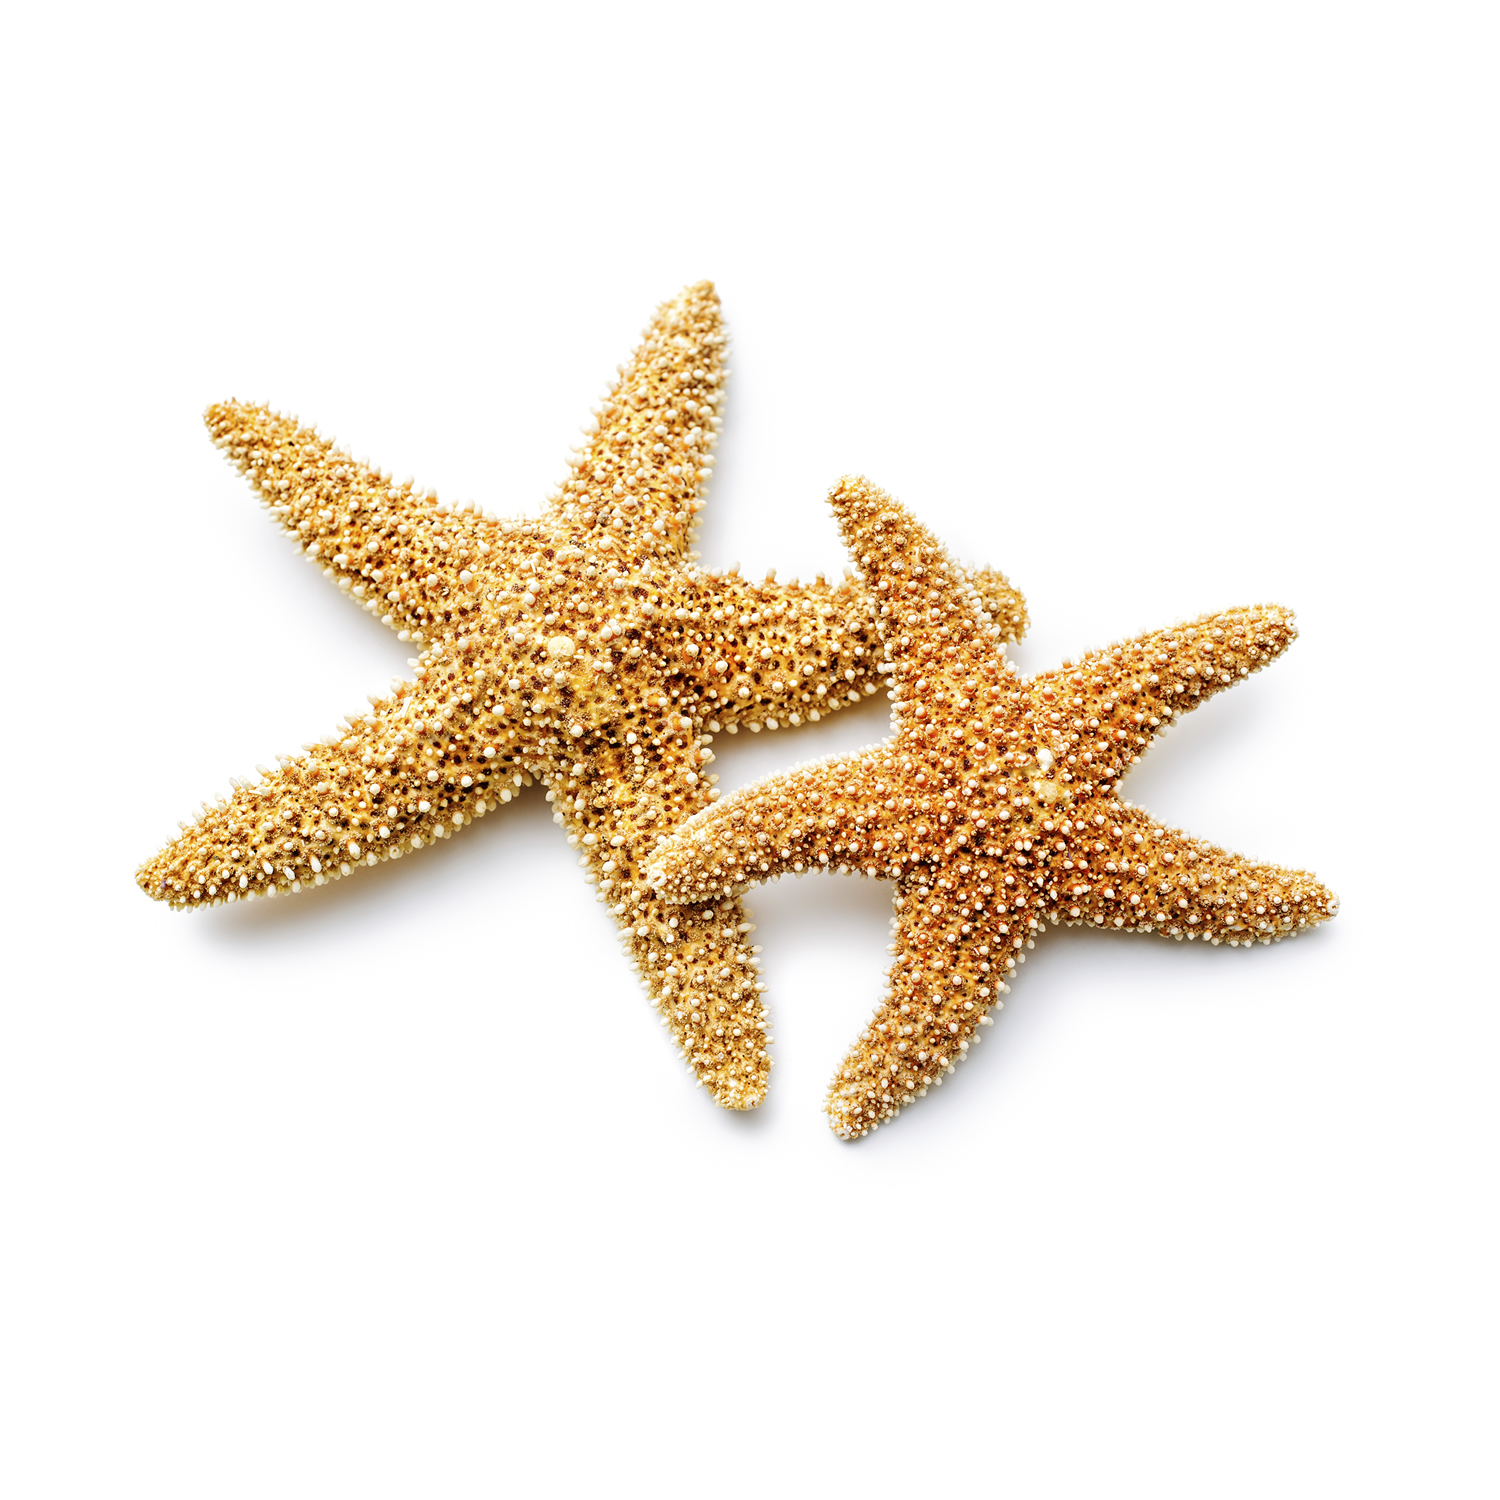 Star + Fish = Starfish - Nemours Reading BrightStart!